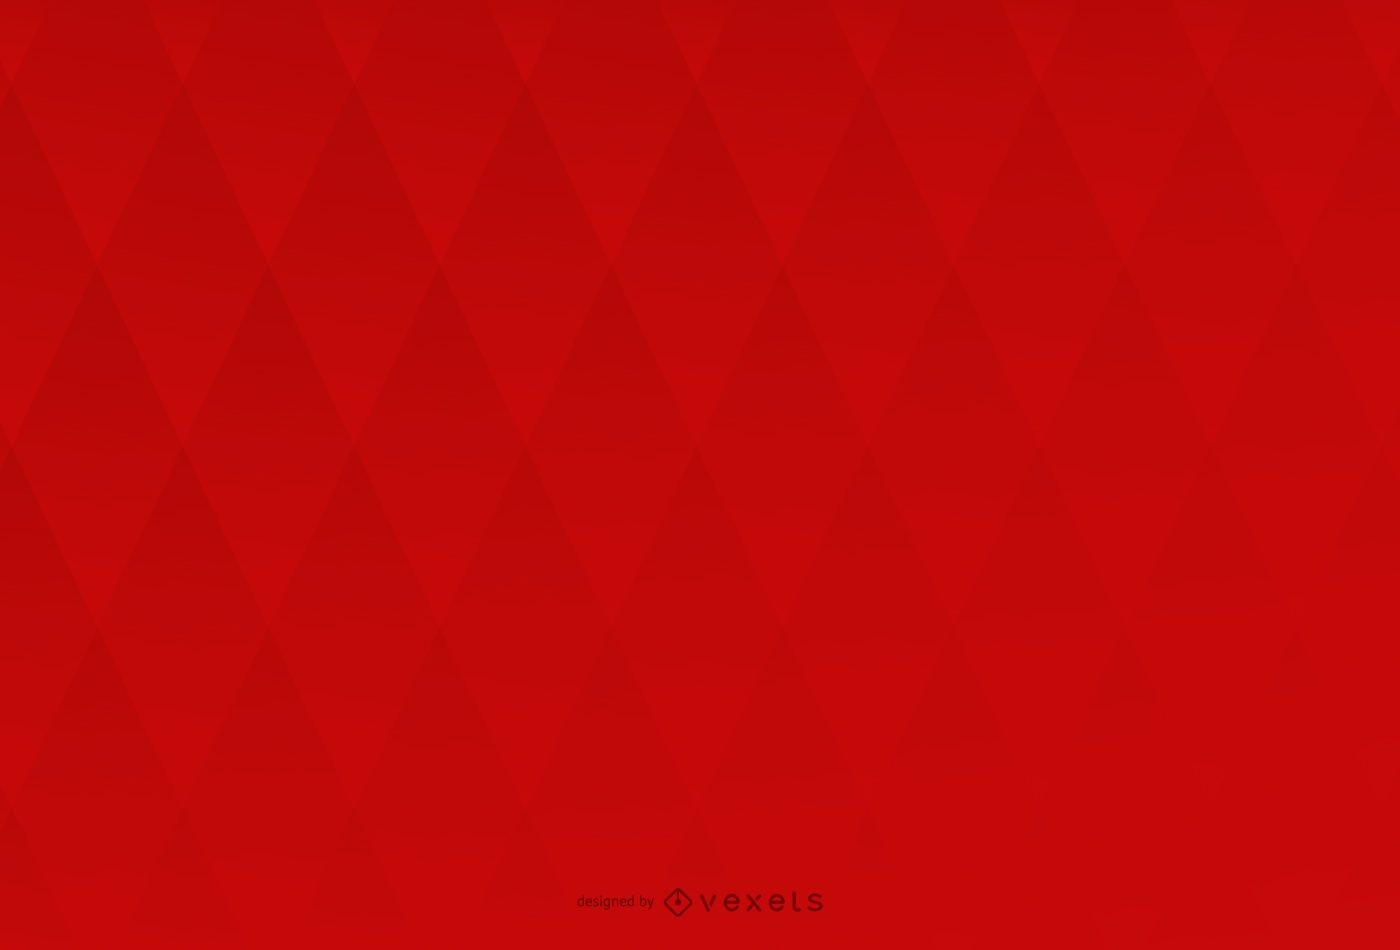 Diseño de fondo rojo con rombo